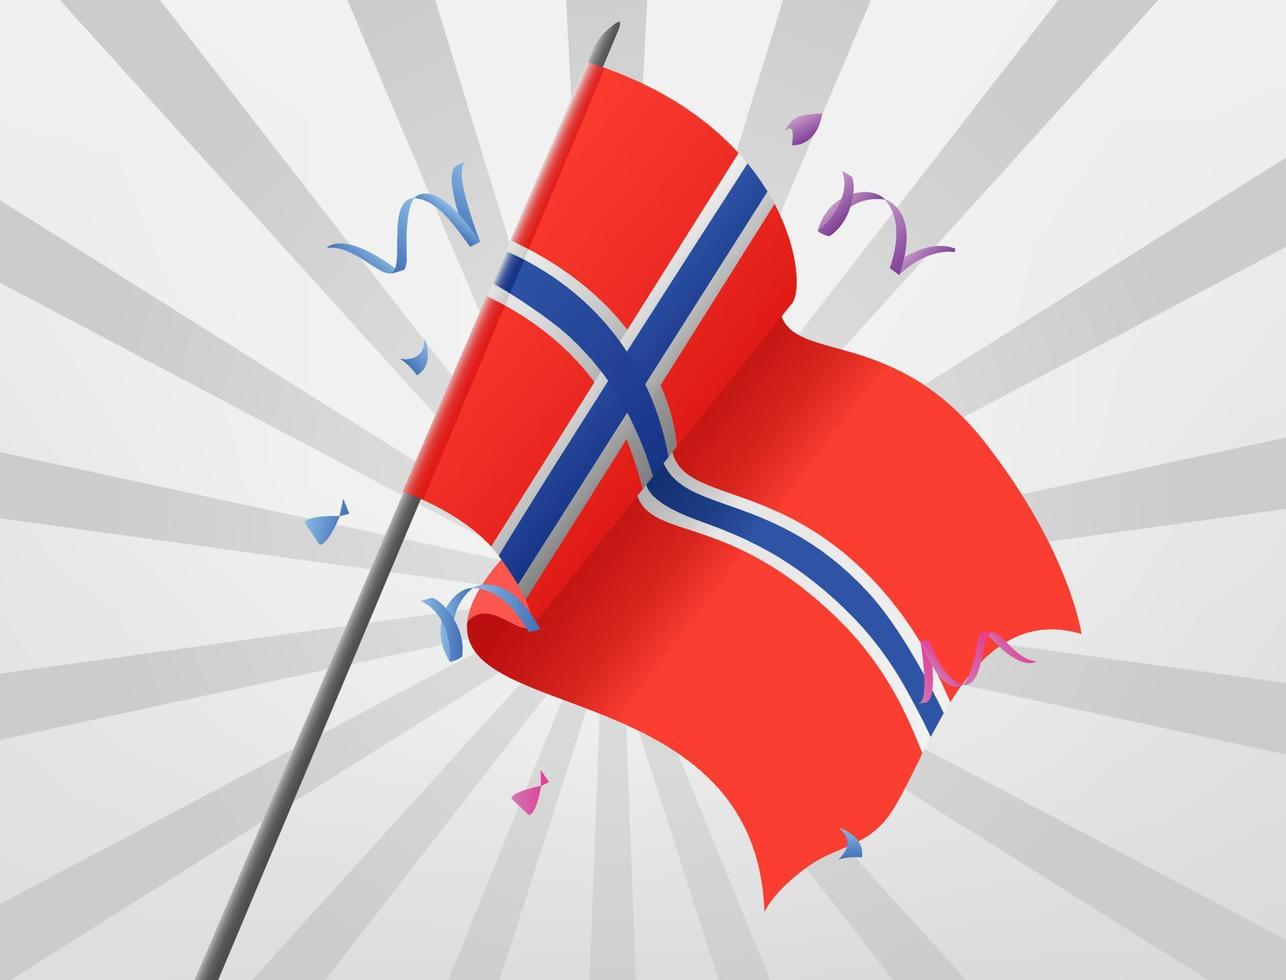 Noorse feestvlaggen rijzen op grote hoogte vector